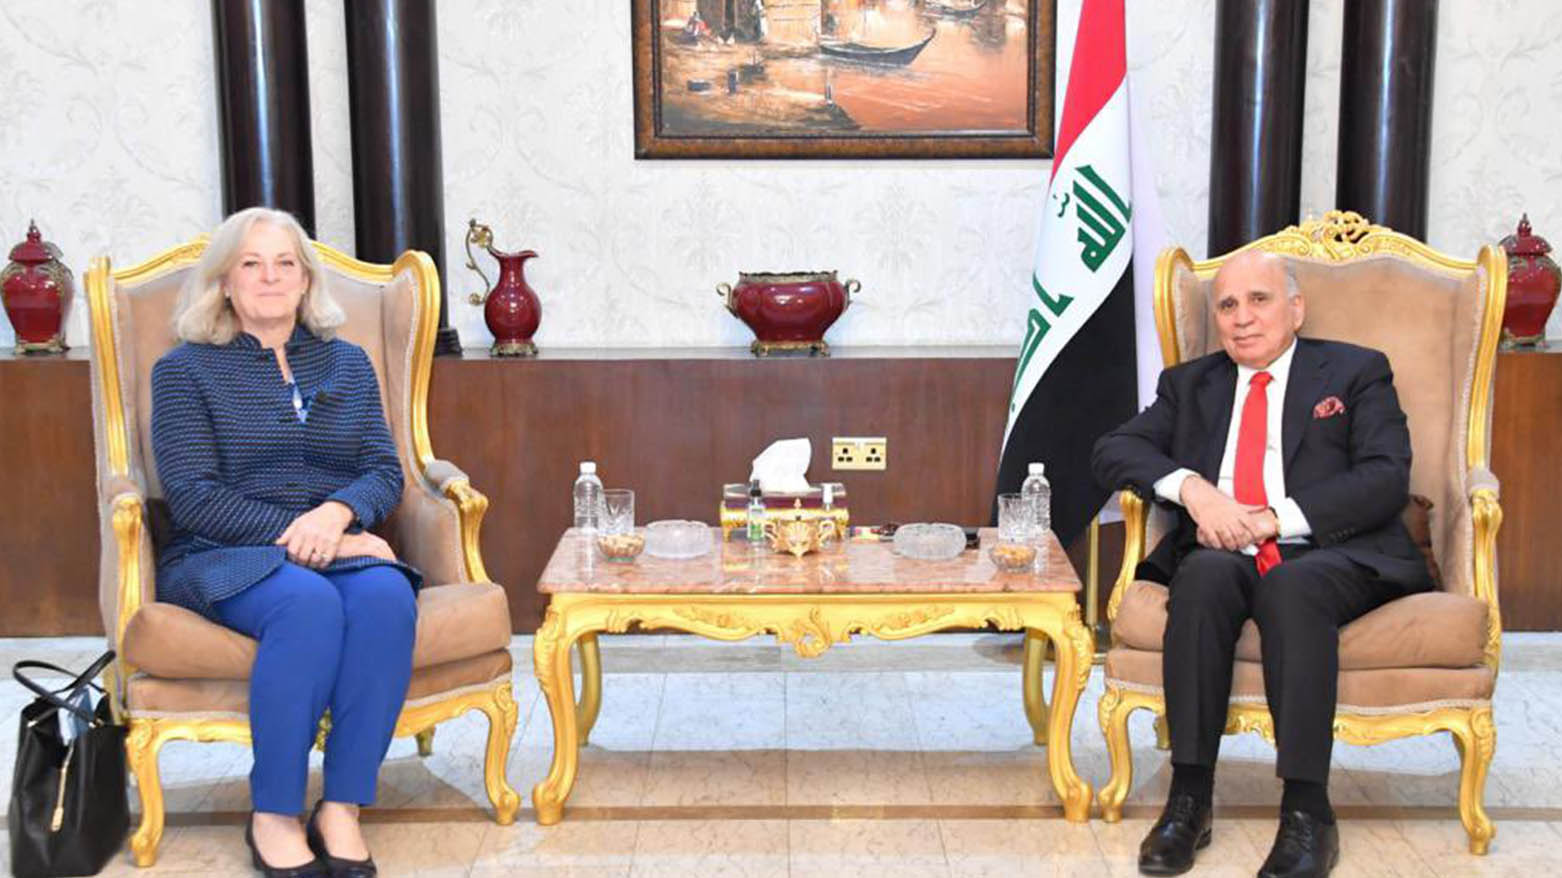 فواد حسین، وزیر امور خارجه عراق و آلینا رومانوفسکی، سفیر ایالات متحده در عراق